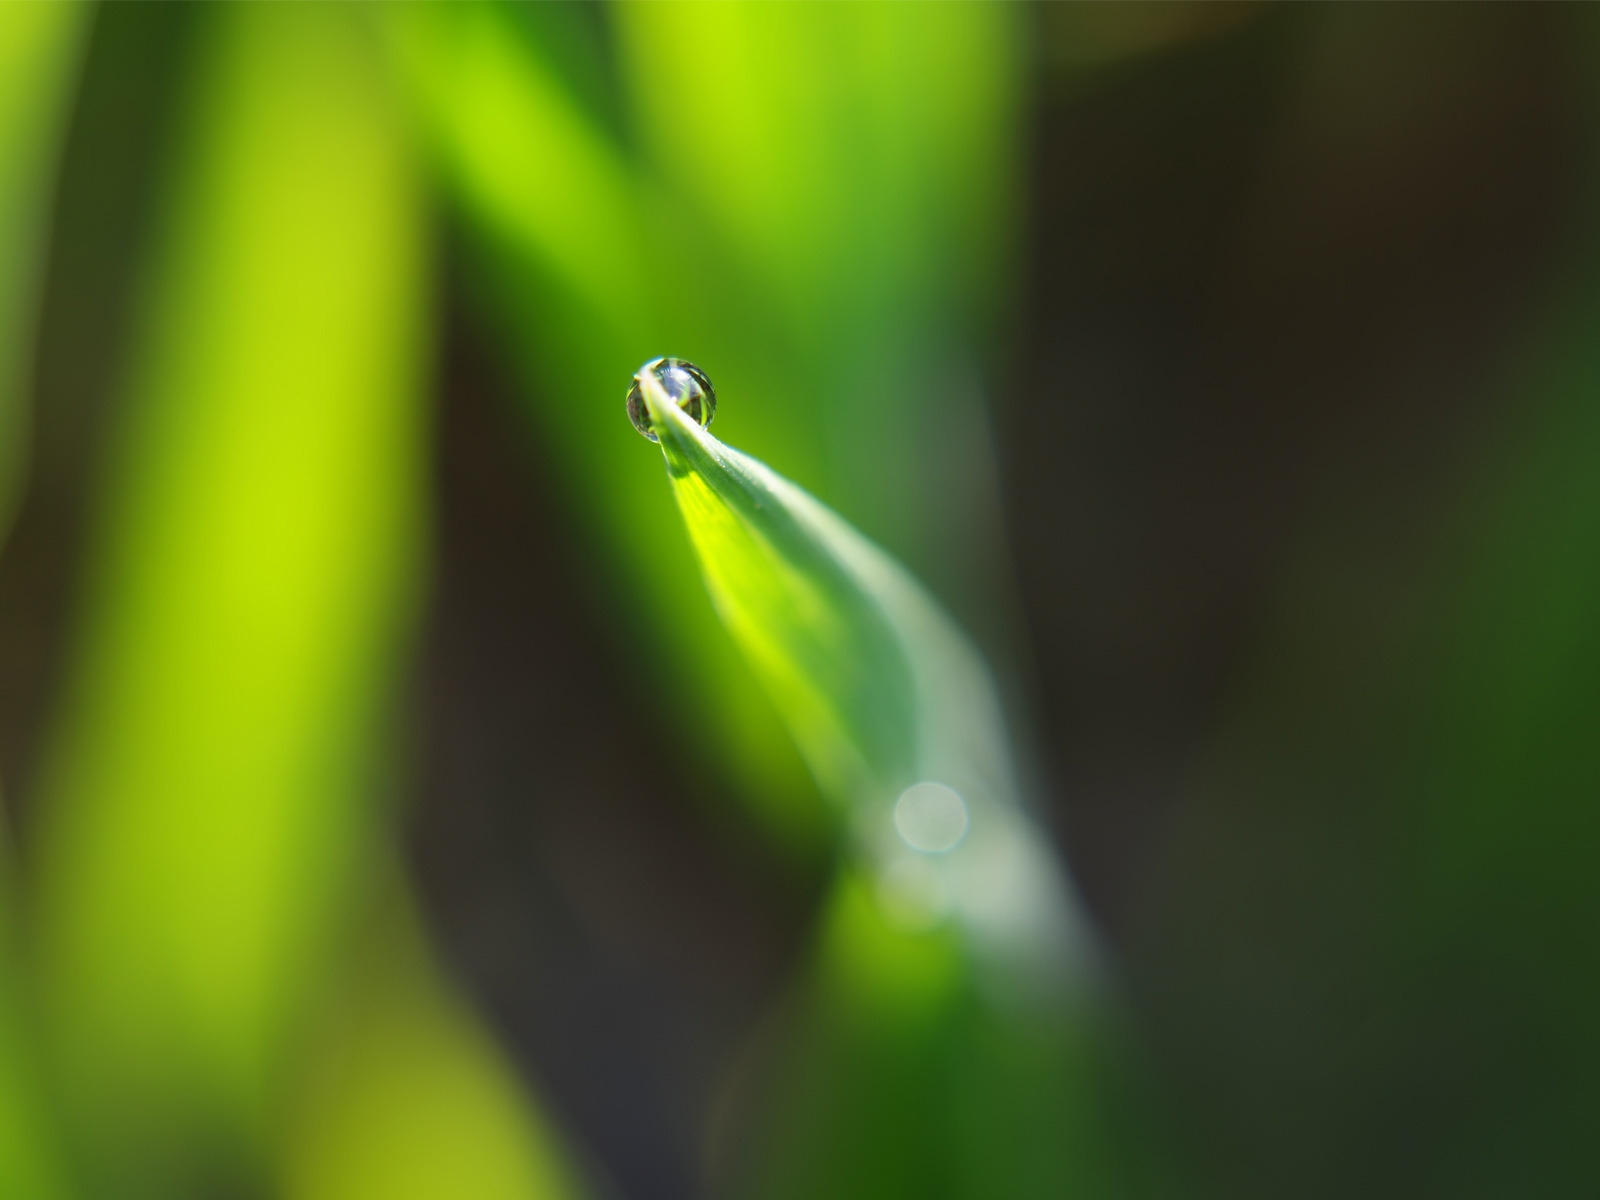 Dewdrop on leaf for 1600 x 1200 resolution